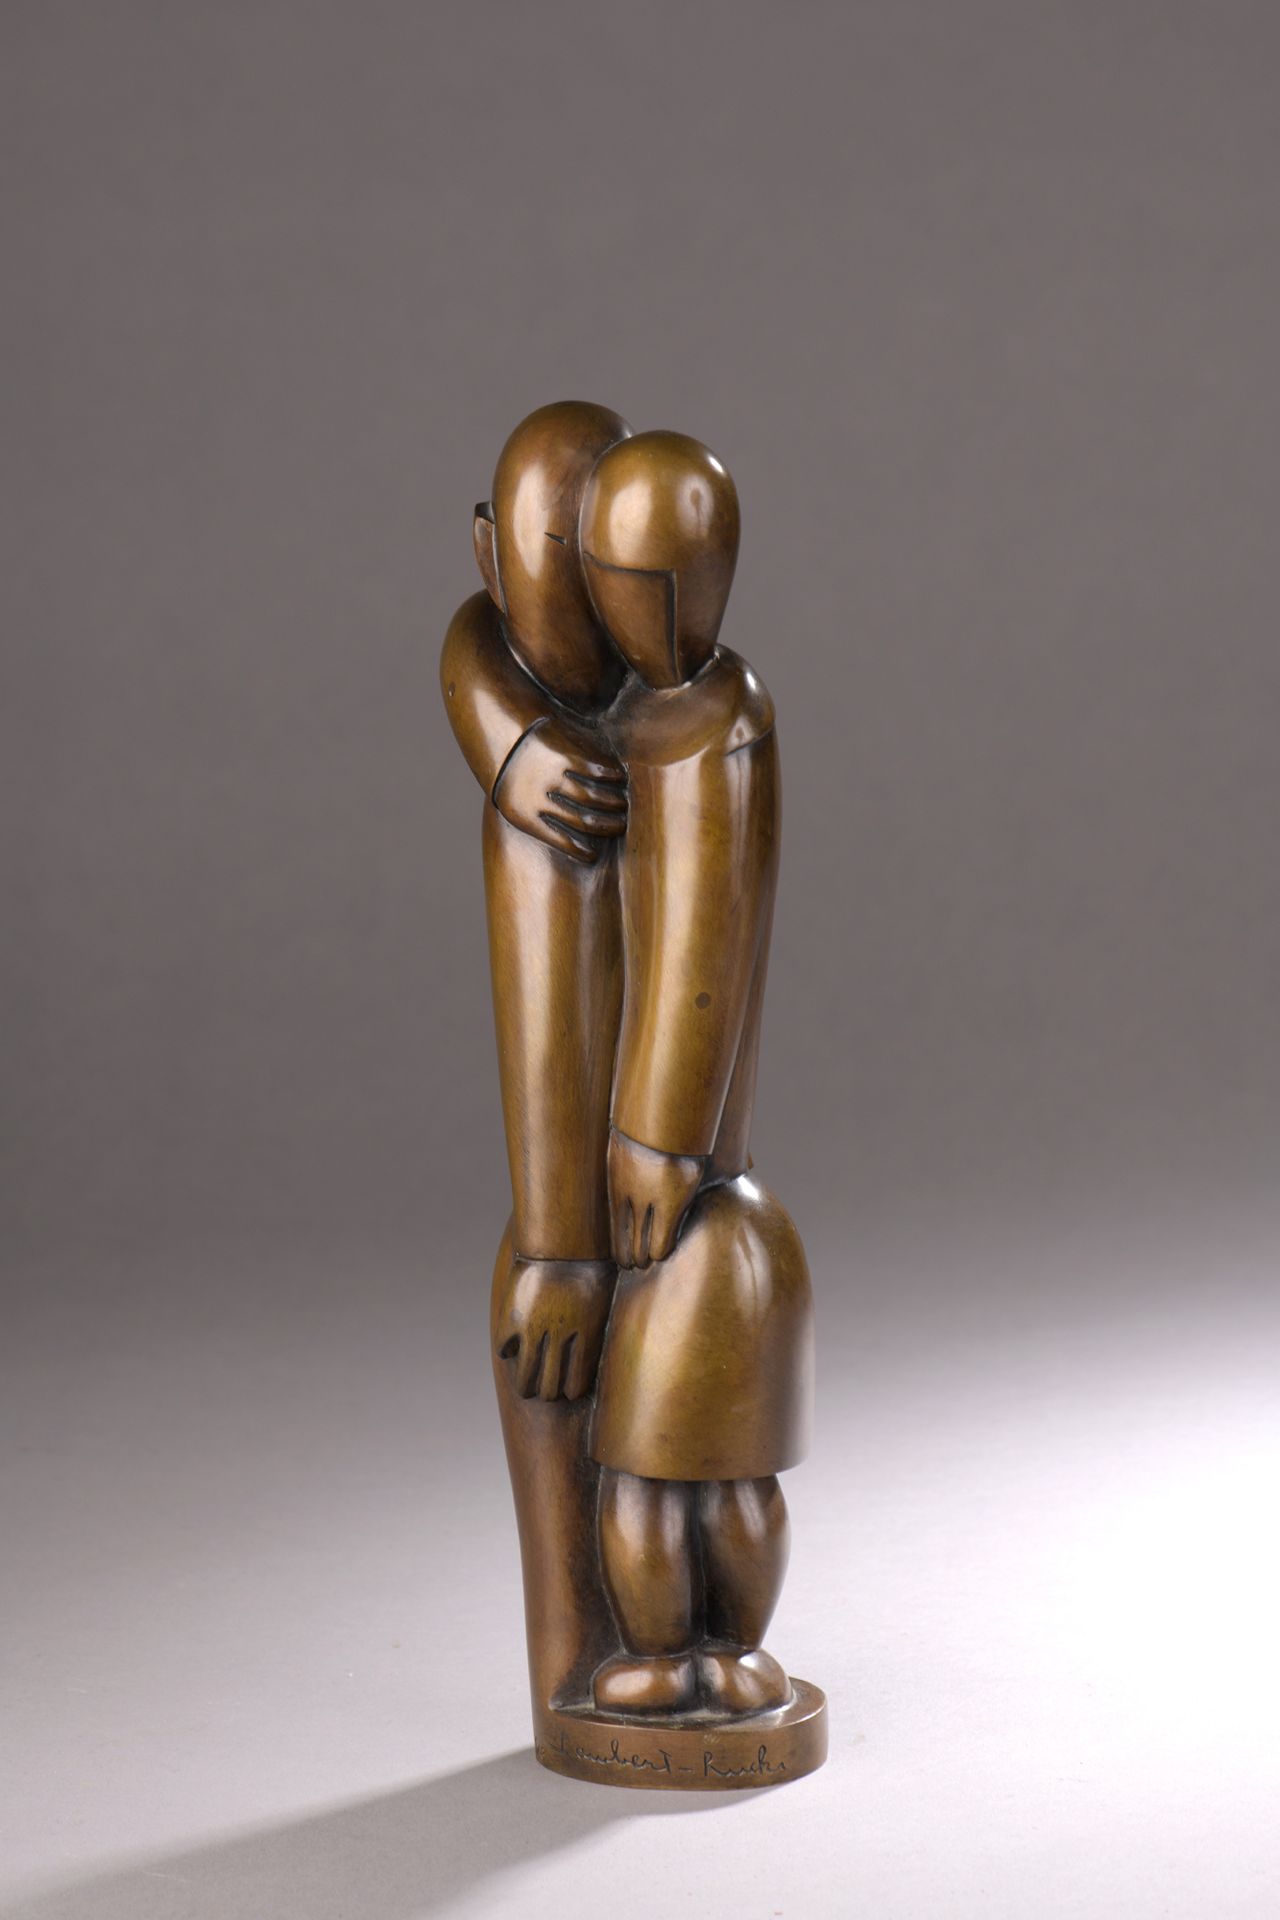 Null 让-兰伯特-鲁克基(1888-1967)

恋人, 1923

鎏金青铜证明，带有细微的棕色铜锈。Plaine铸造厂的死后失蜡铸造，由Galerie &hellip;